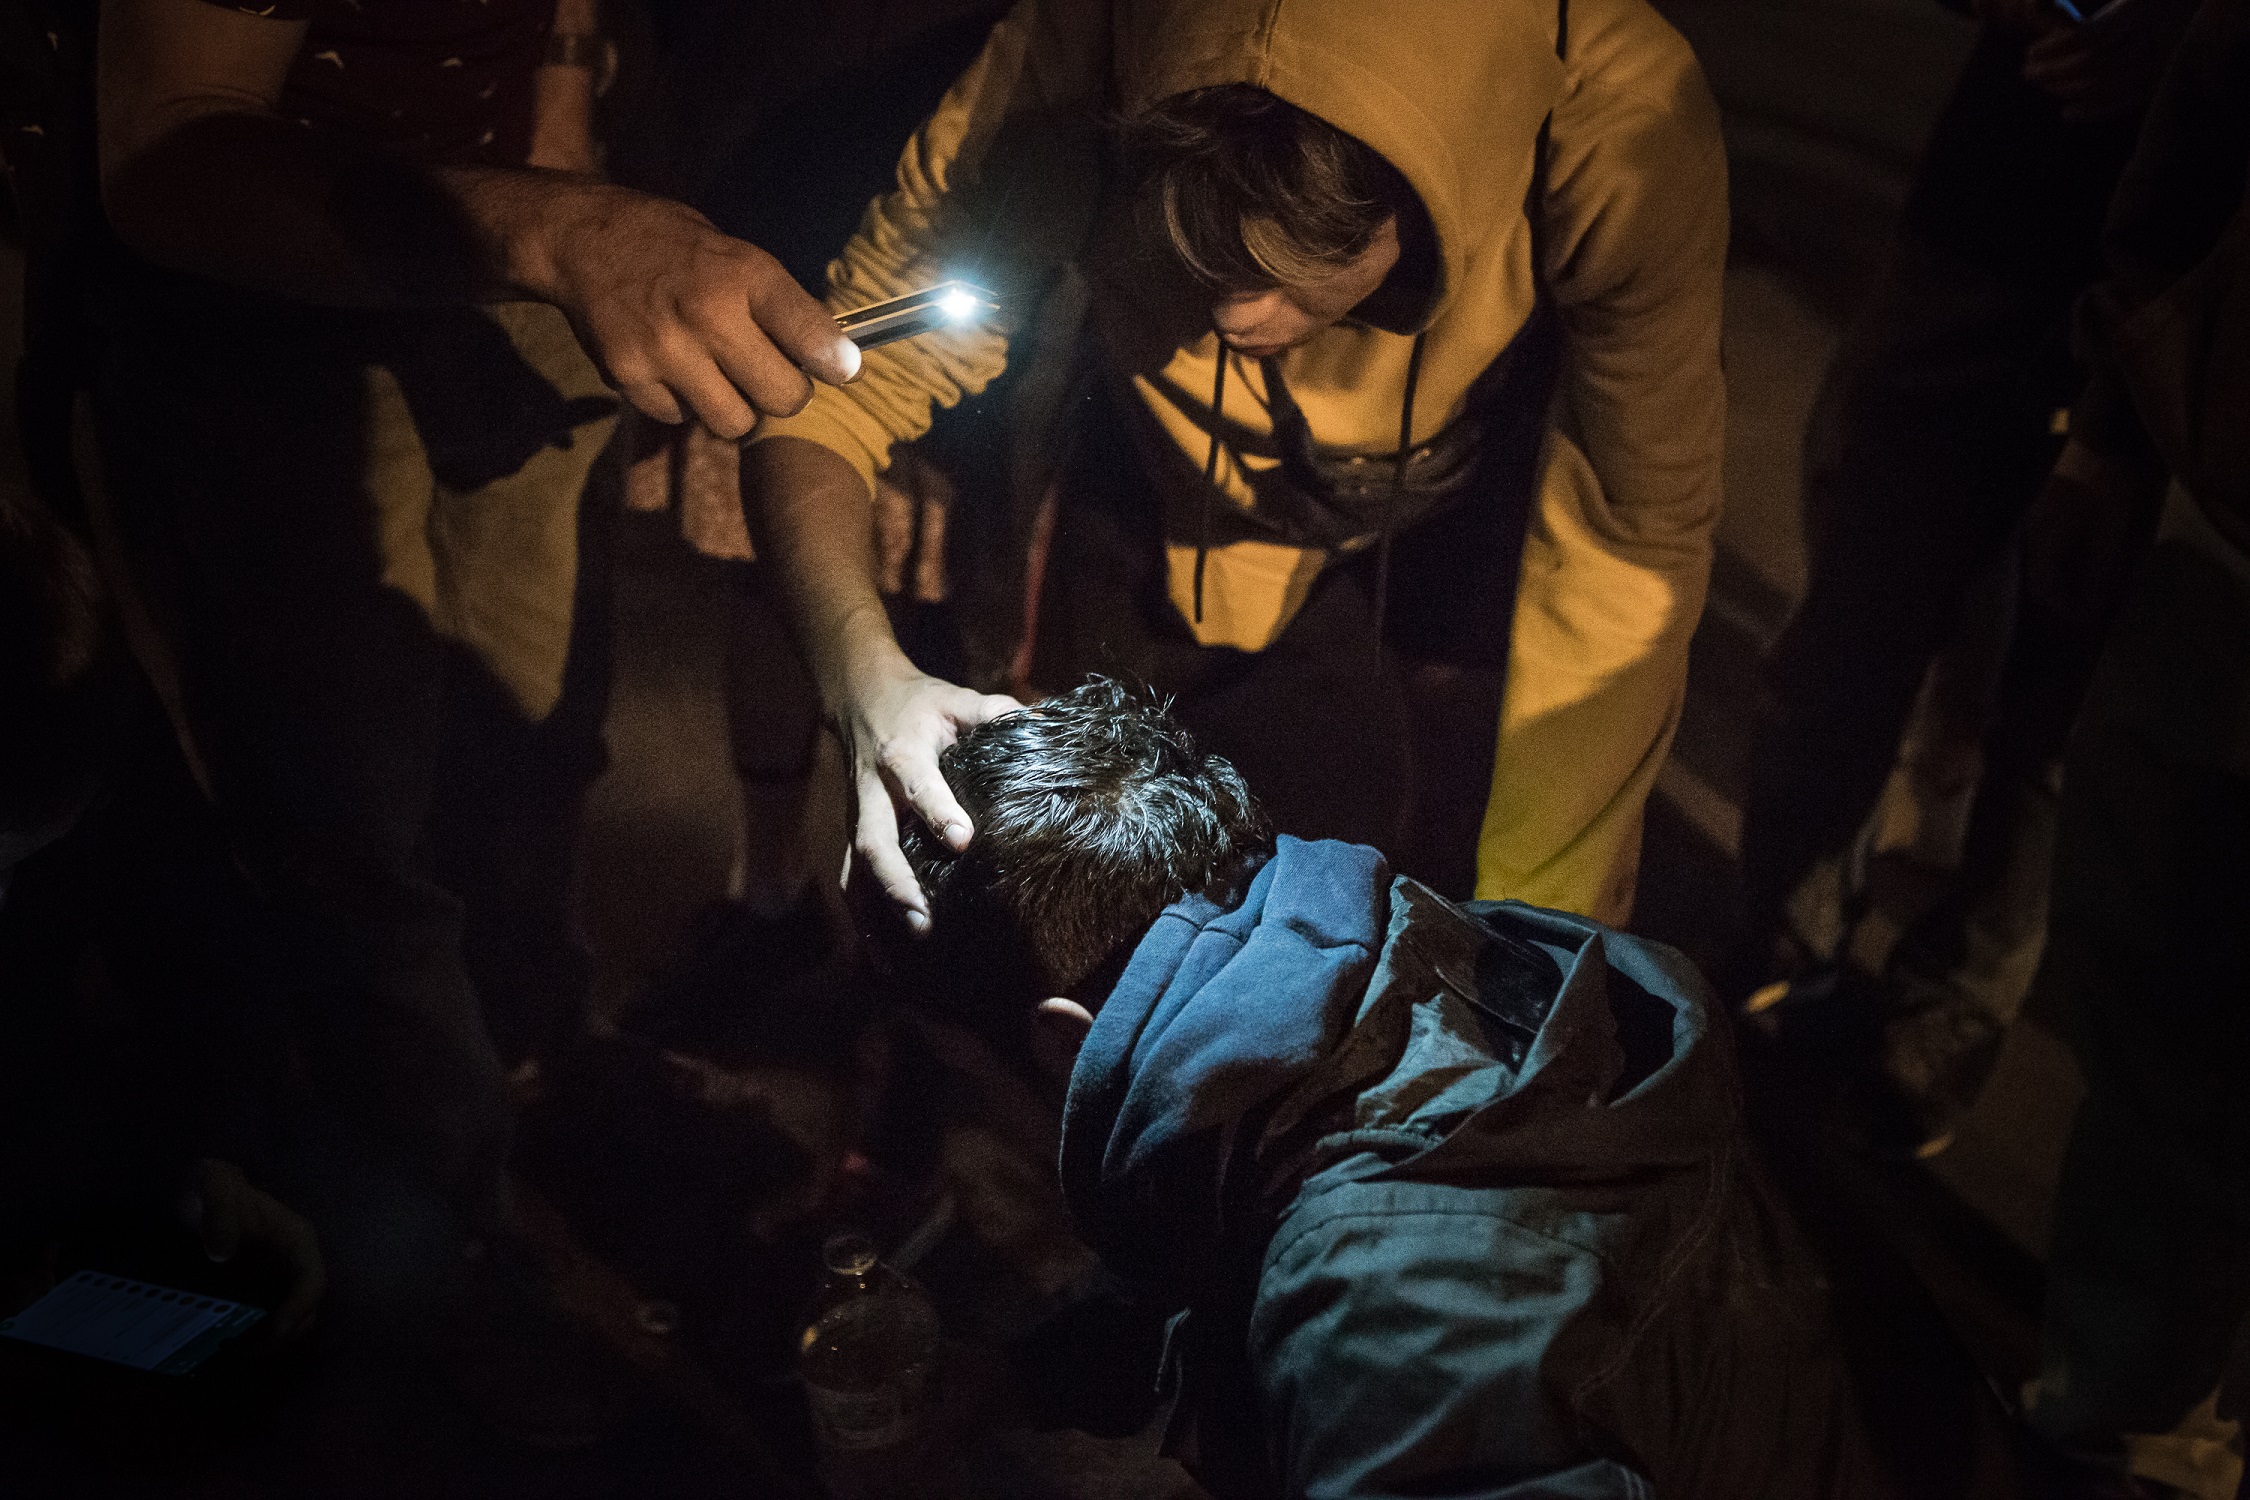 Manifestants inspeccionen el cap de l'Albert després de l'agressió dels Mossos. Foto: Sira Esclasans